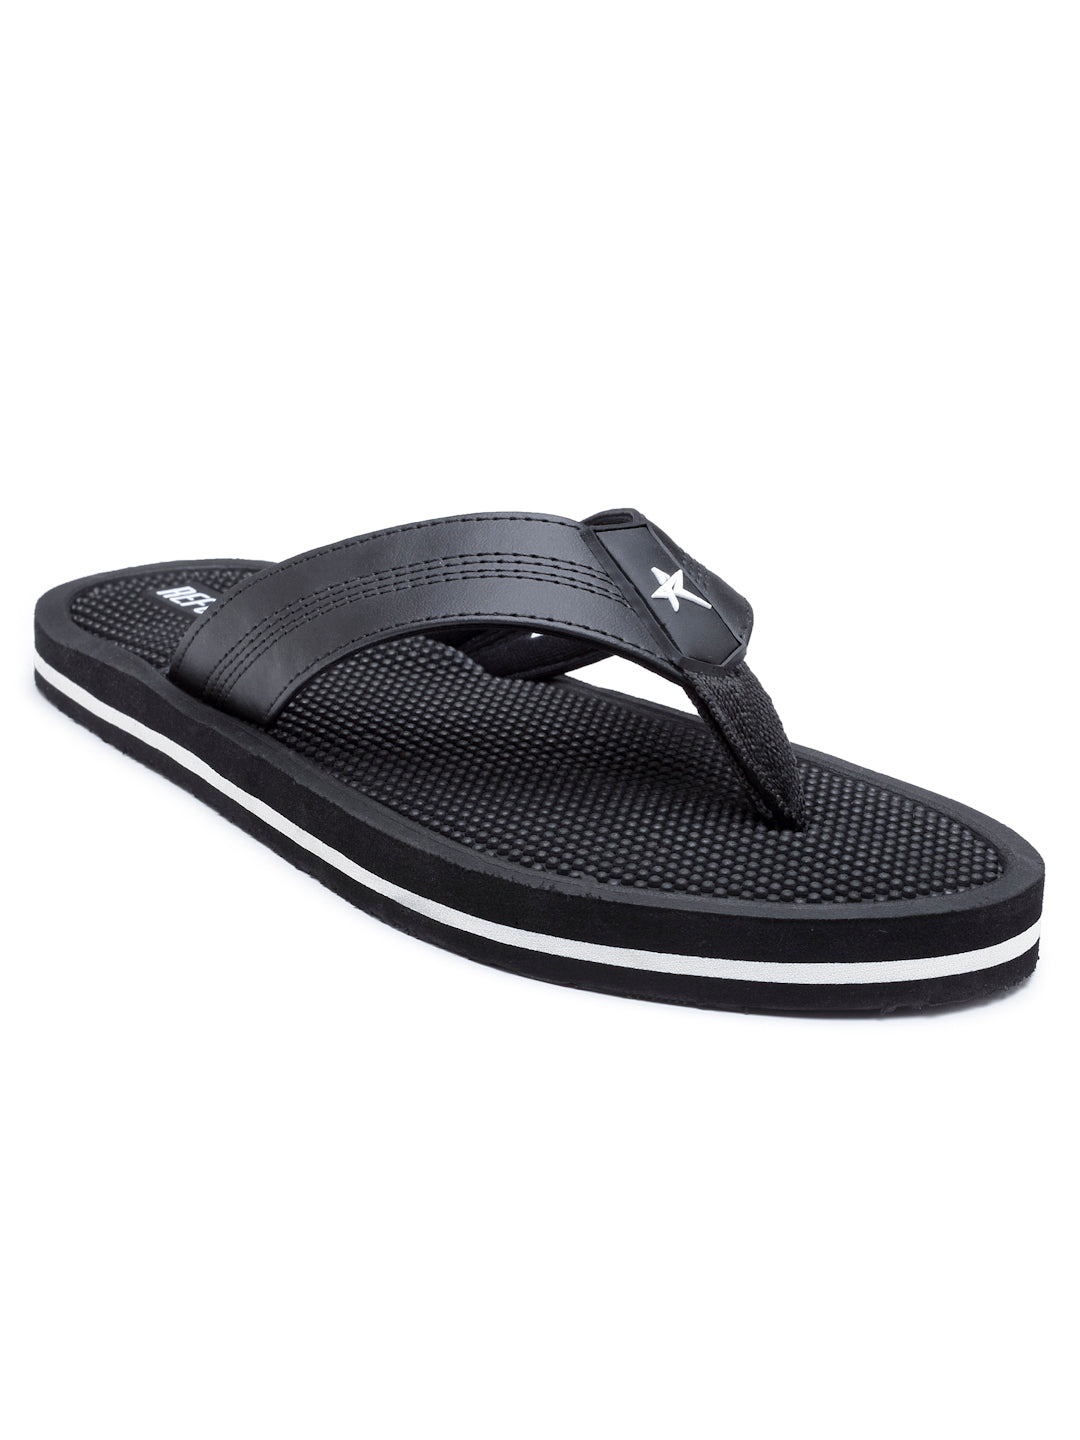 Black Solid EVA Rubber Slip On Casual Slippers For Men